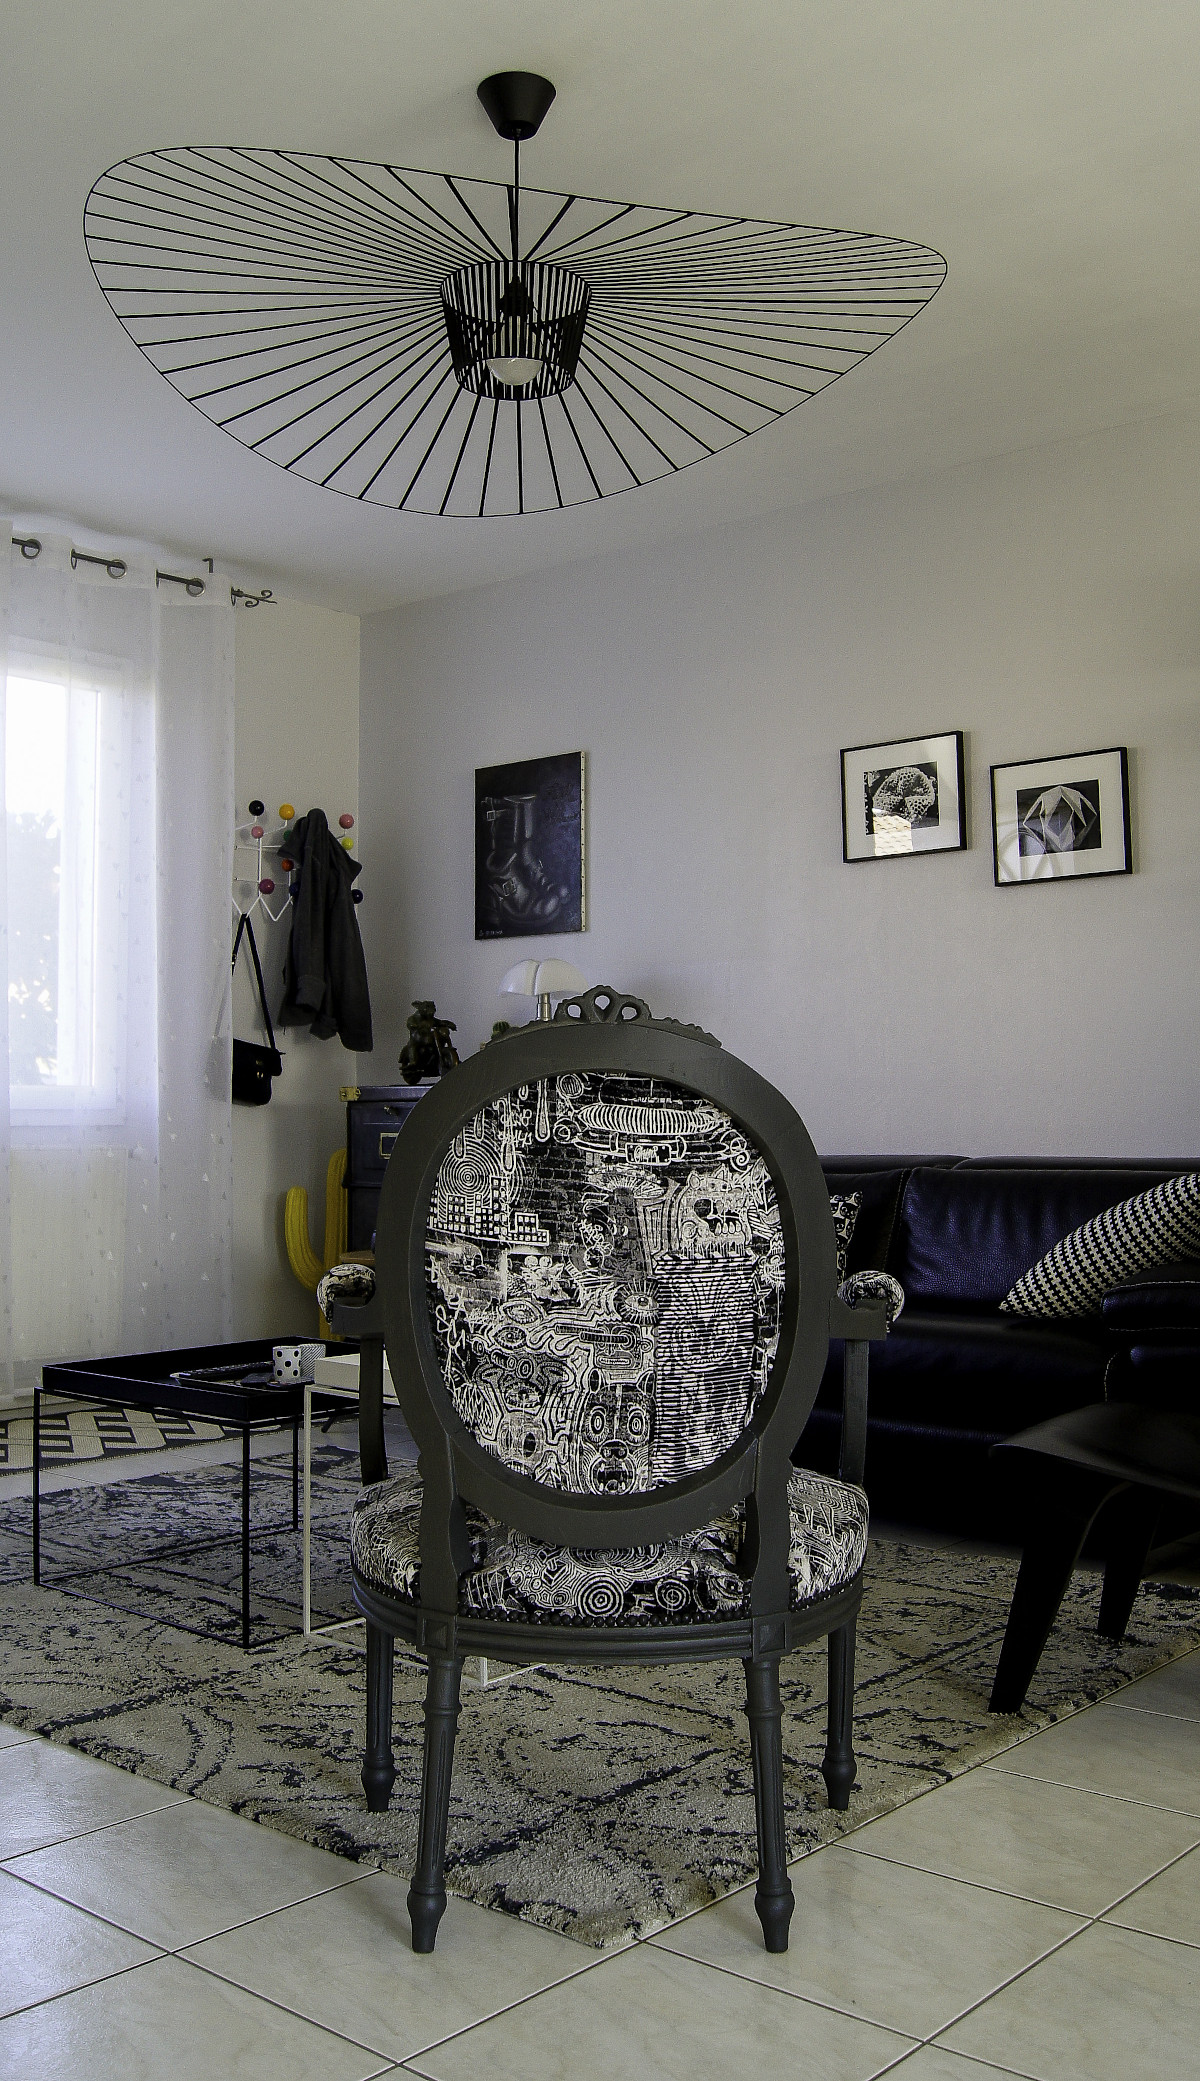 Décapage et relooking de fauteuils Louis XVI, finition couleur réglisse. Tissus noir et beige. Vue de dos.